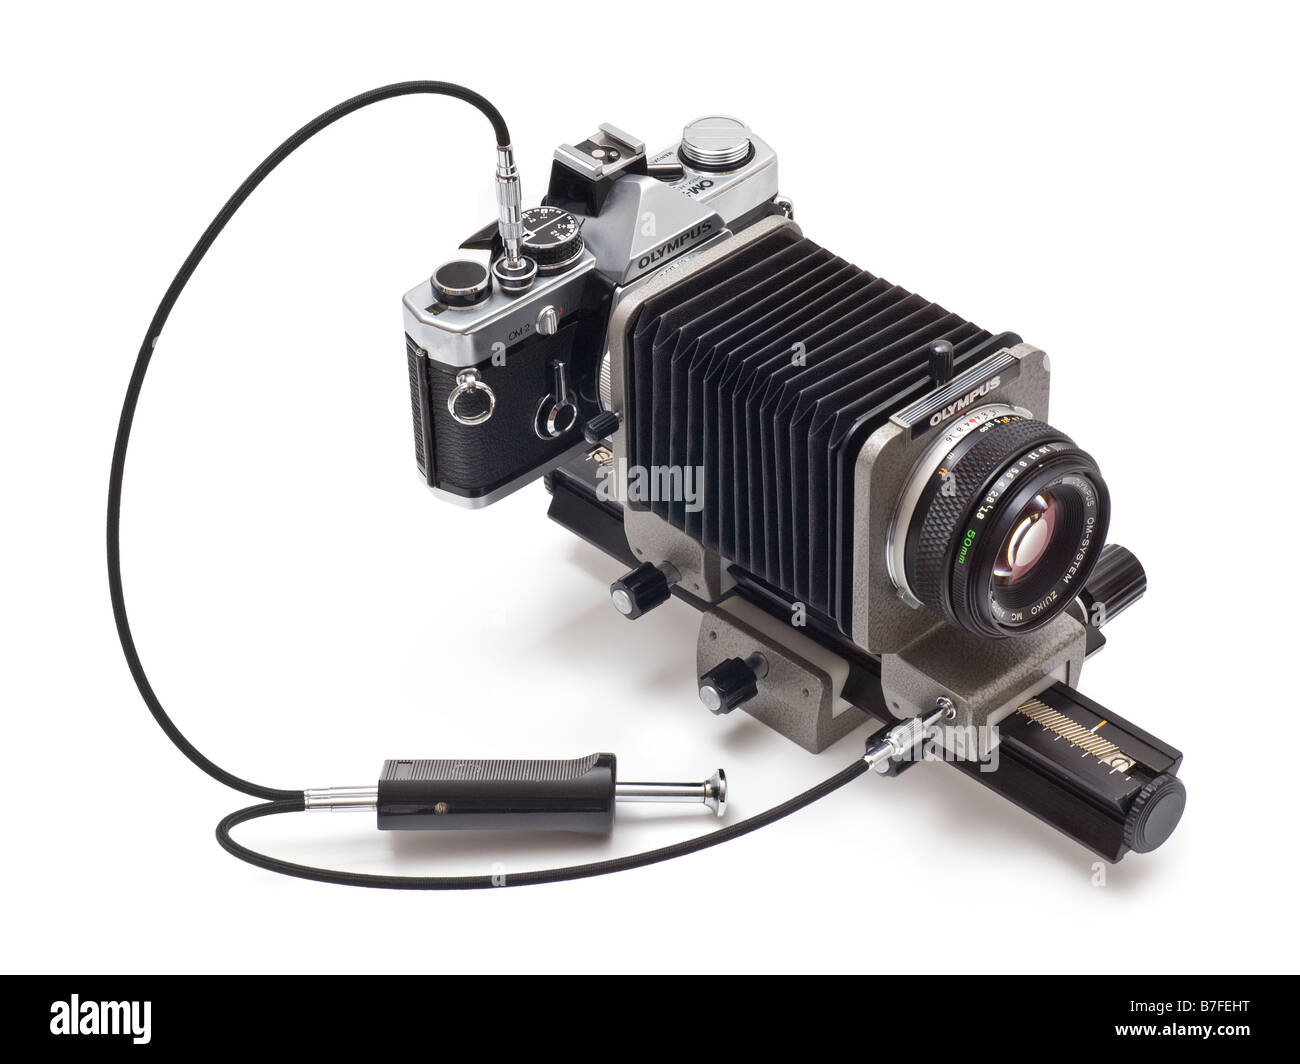 Olympus OM2n macro fuelles configurado para fotografía macro con fuelles, twin y liberación del cable estándar de 50 mm de la lente Zuiko. Foto de stock